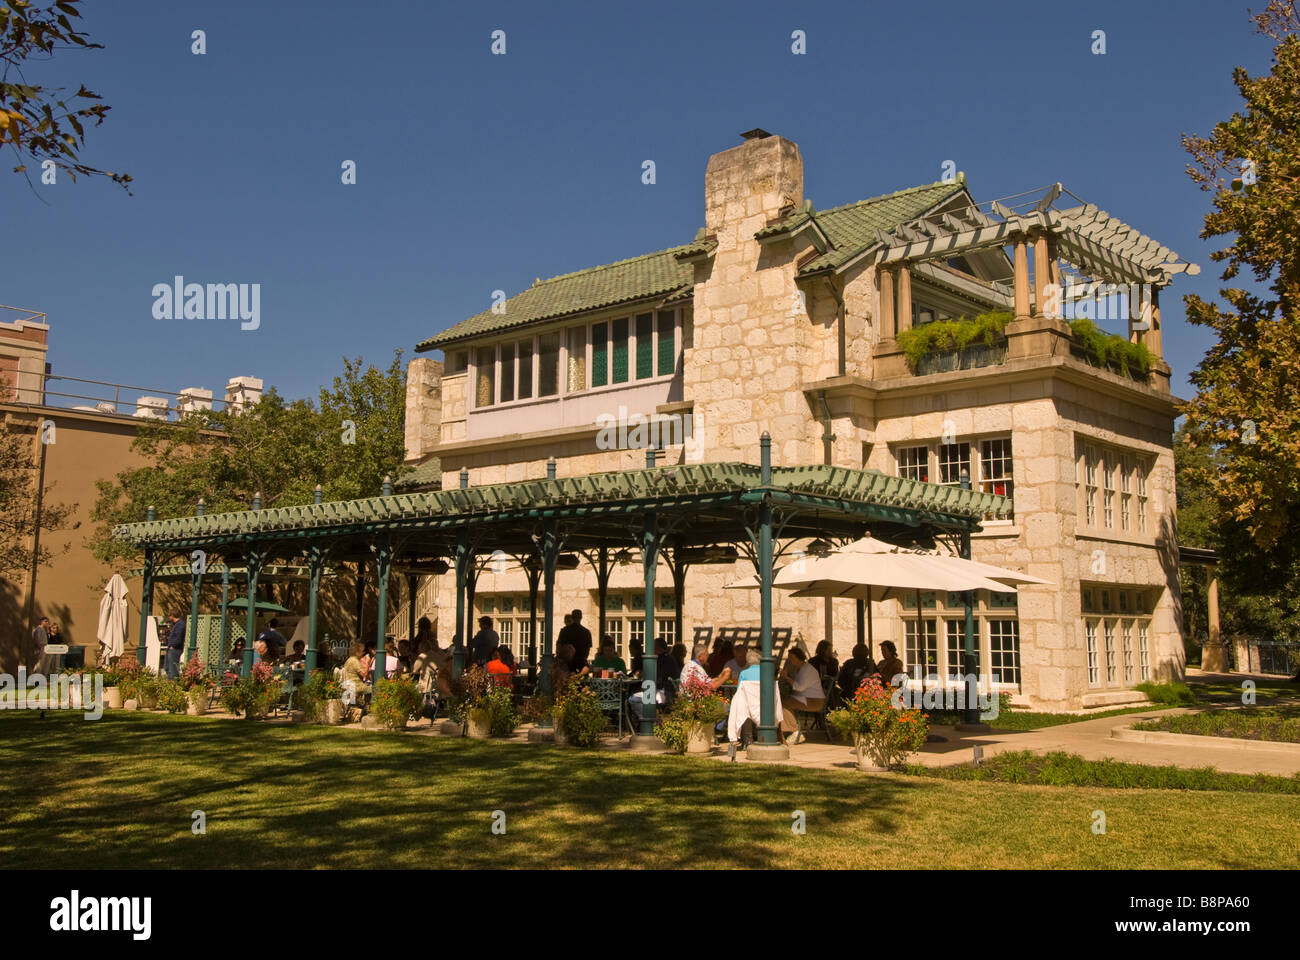 Guenther House San Antonio Texas tx restauré comme ac museum et restaurant café en plein air avec diners, attraction touristique populaire Banque D'Images